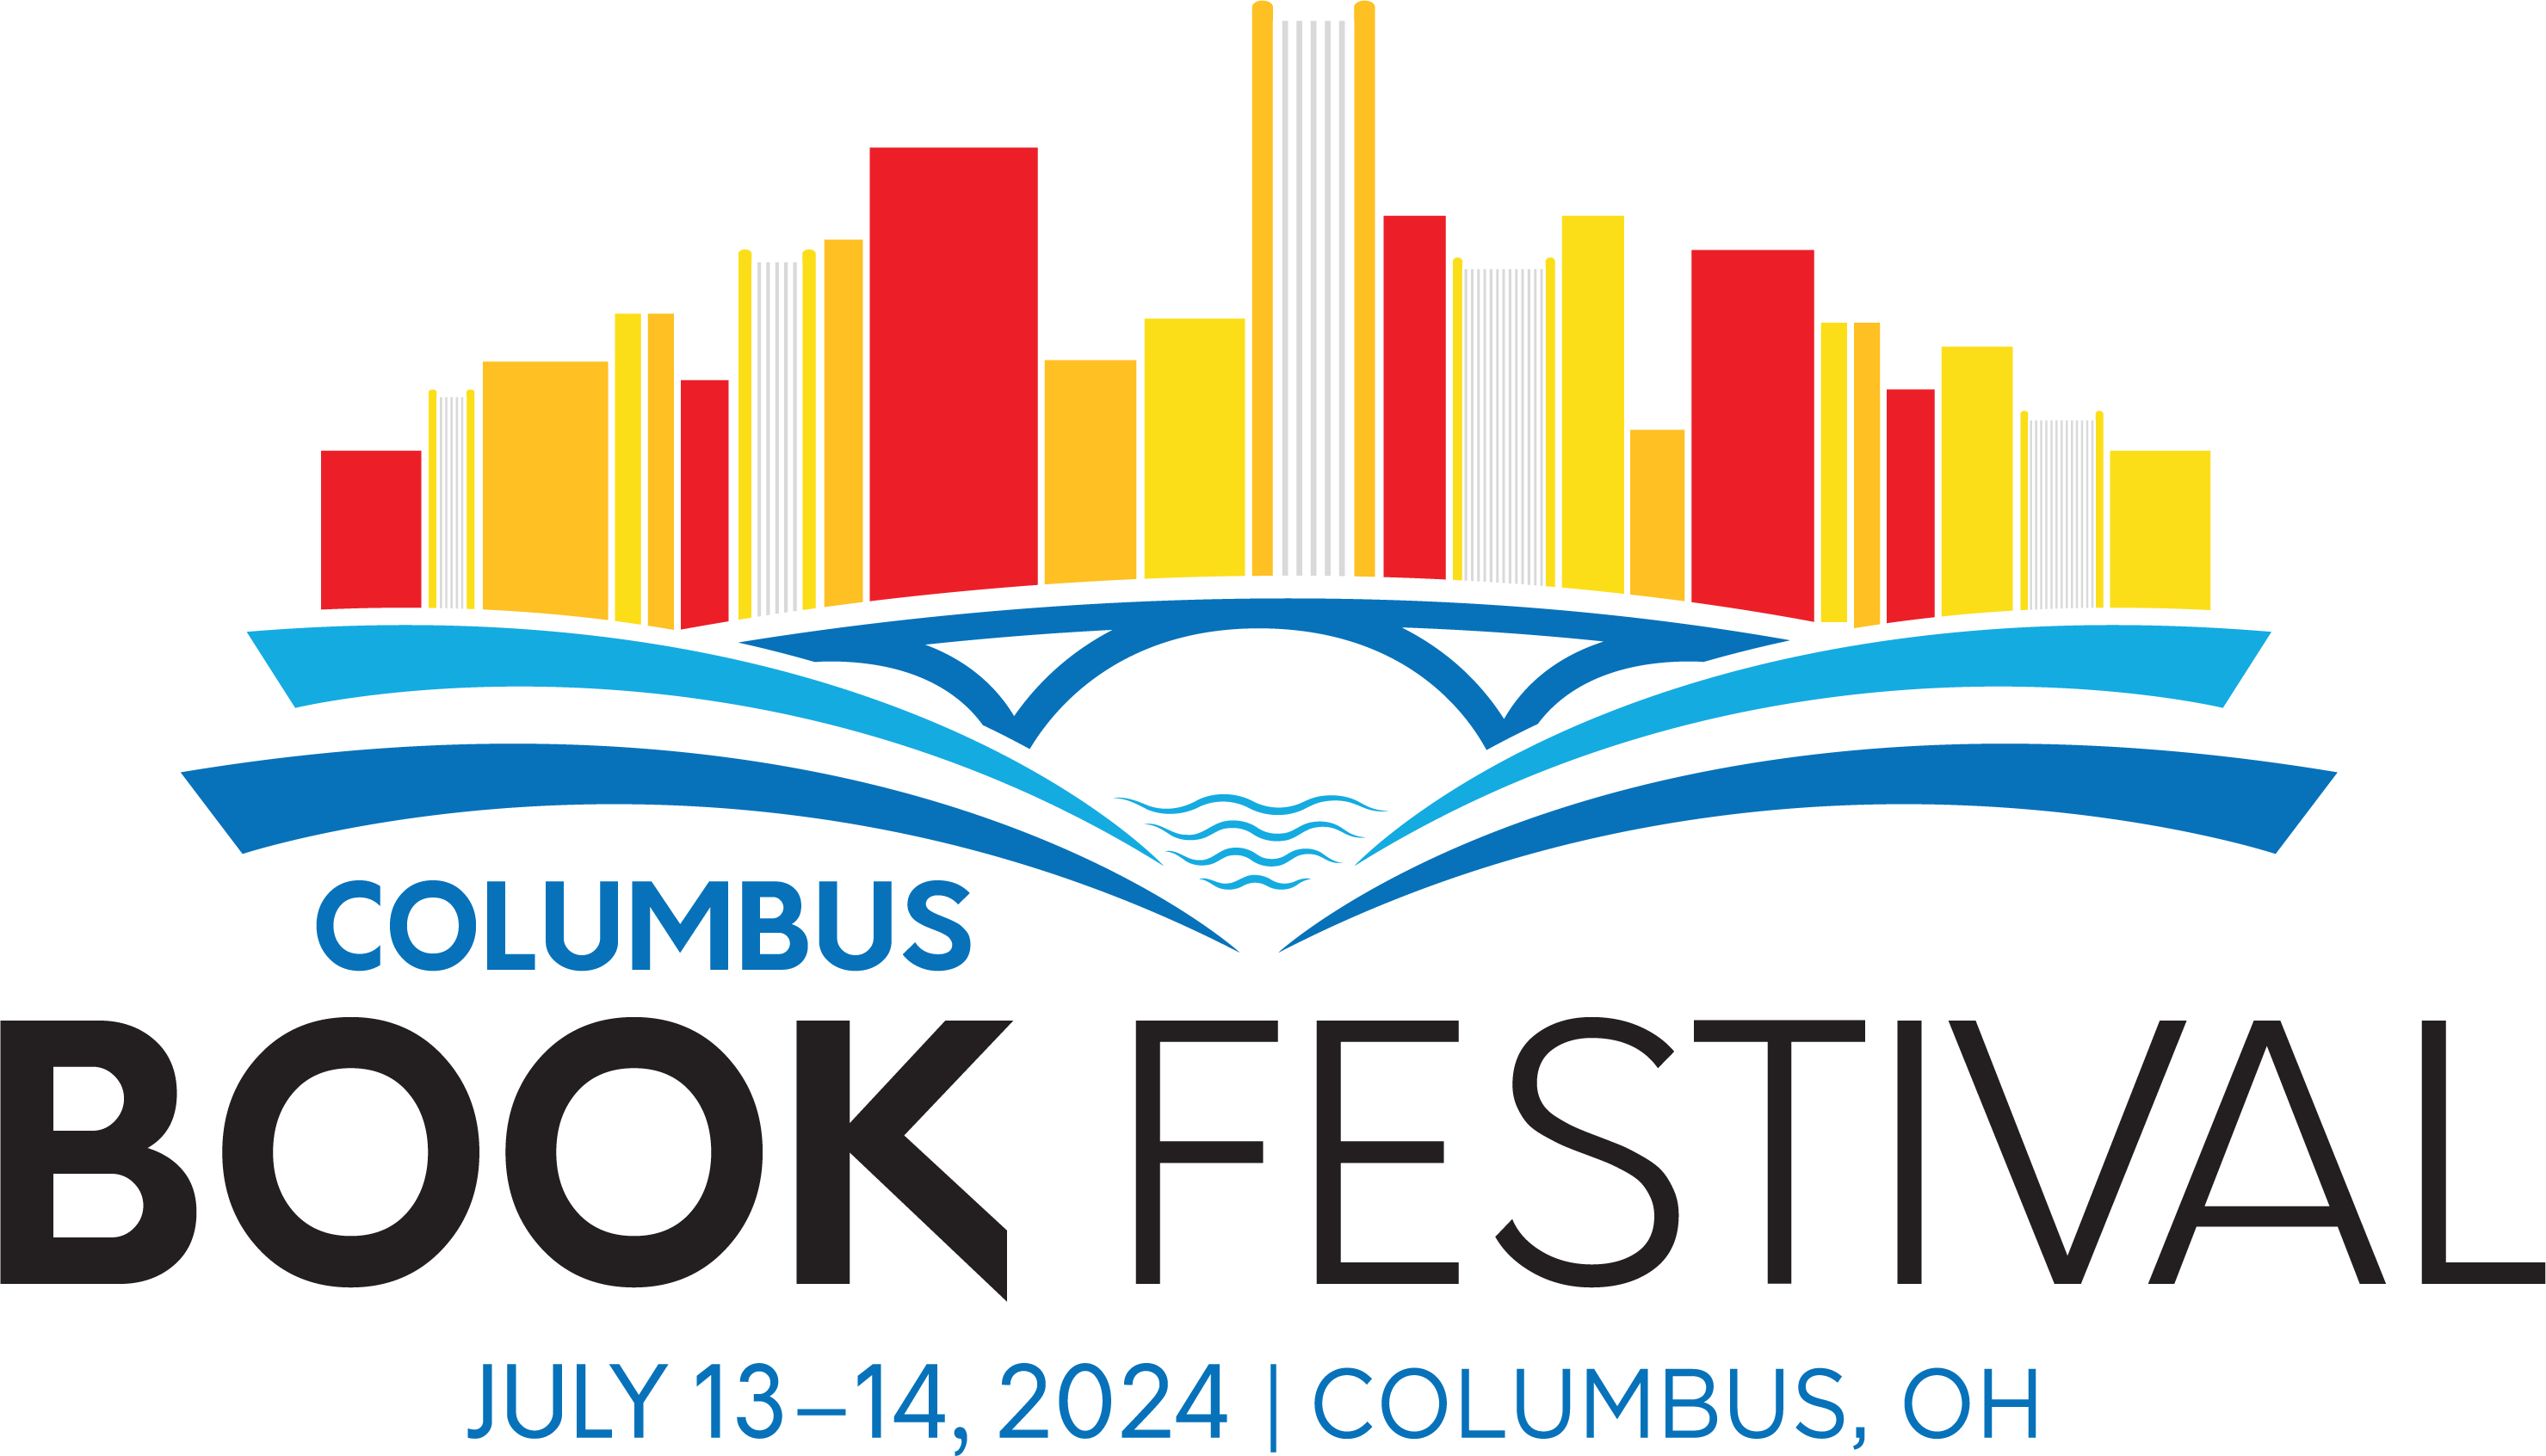 Columbus Book Festival